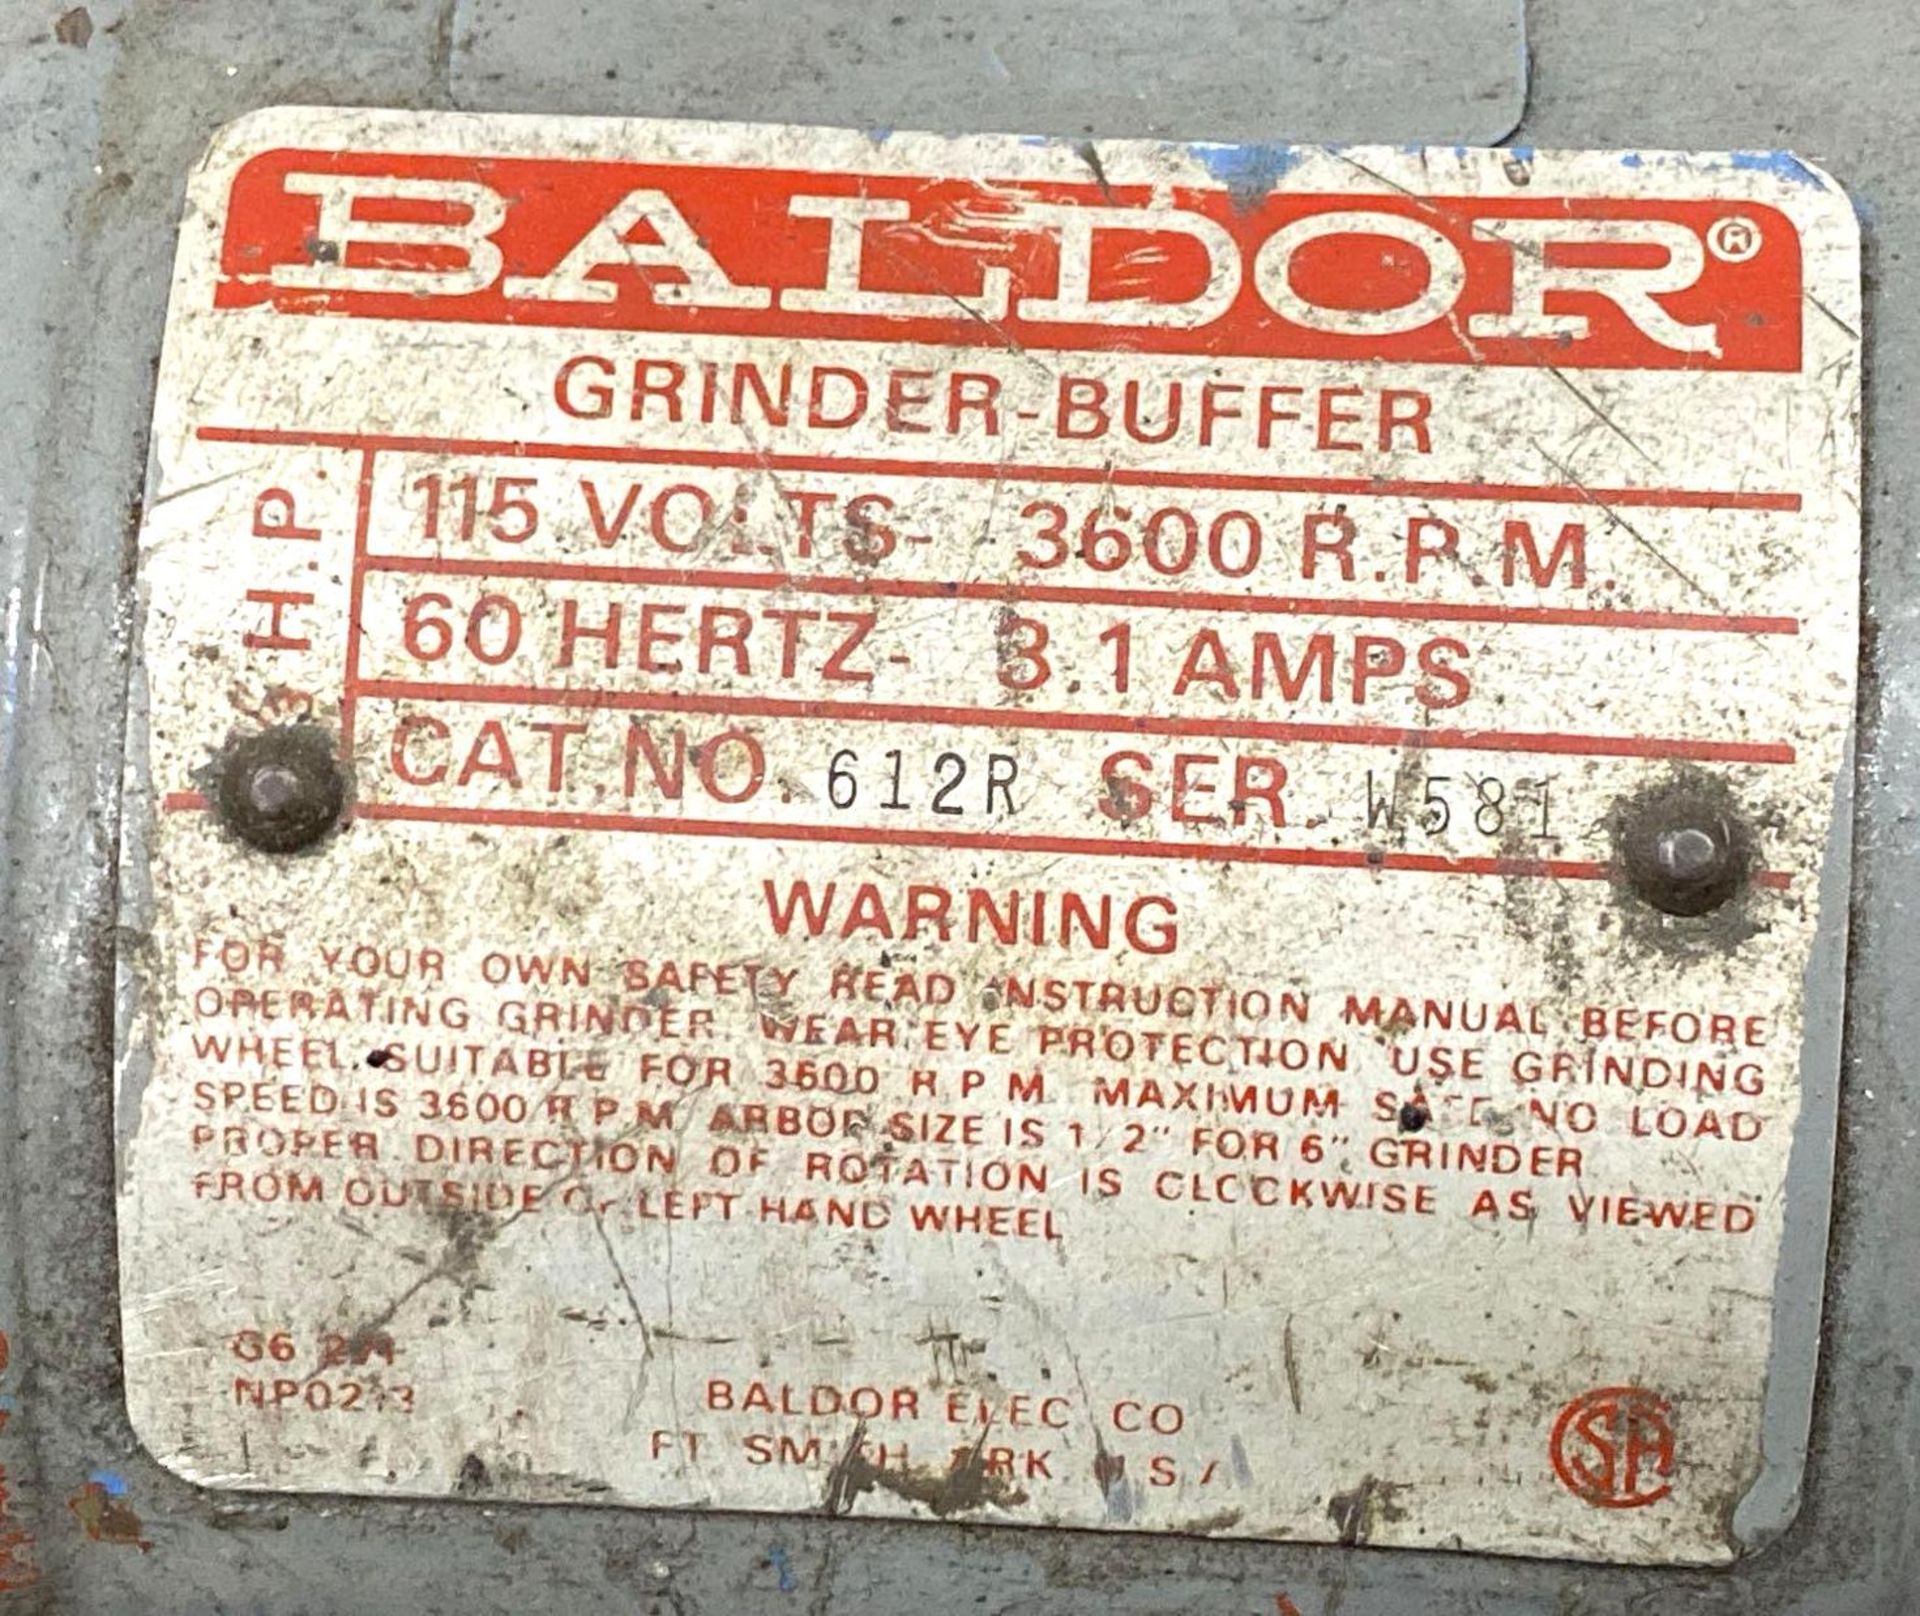 6” DE Baldor Bench Grinder / Buffer, 115V - Image 3 of 3